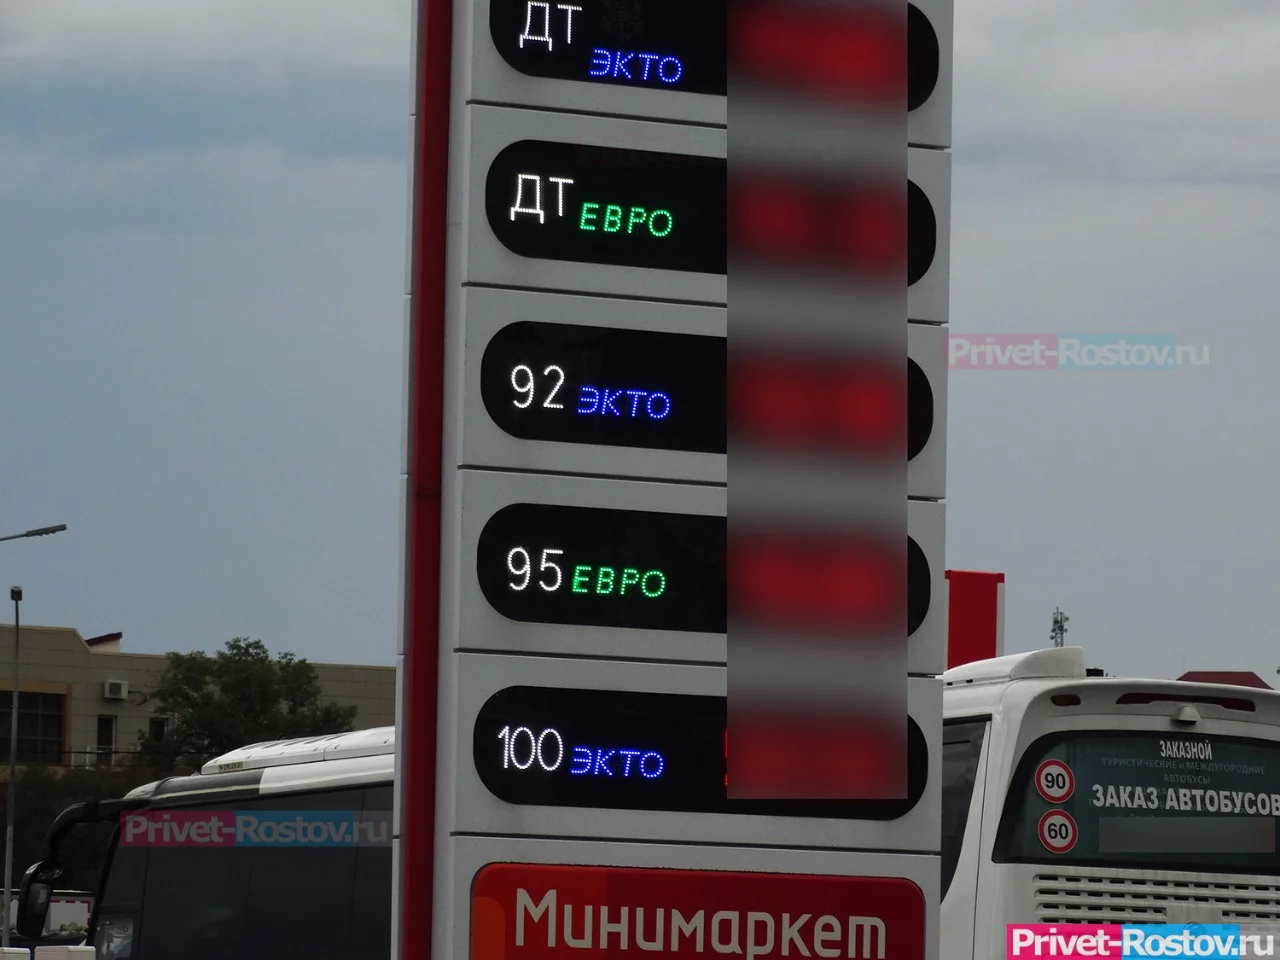 Ростовские автомобилисты сообщили о неработающих АЗС из-за отсутствия бензина